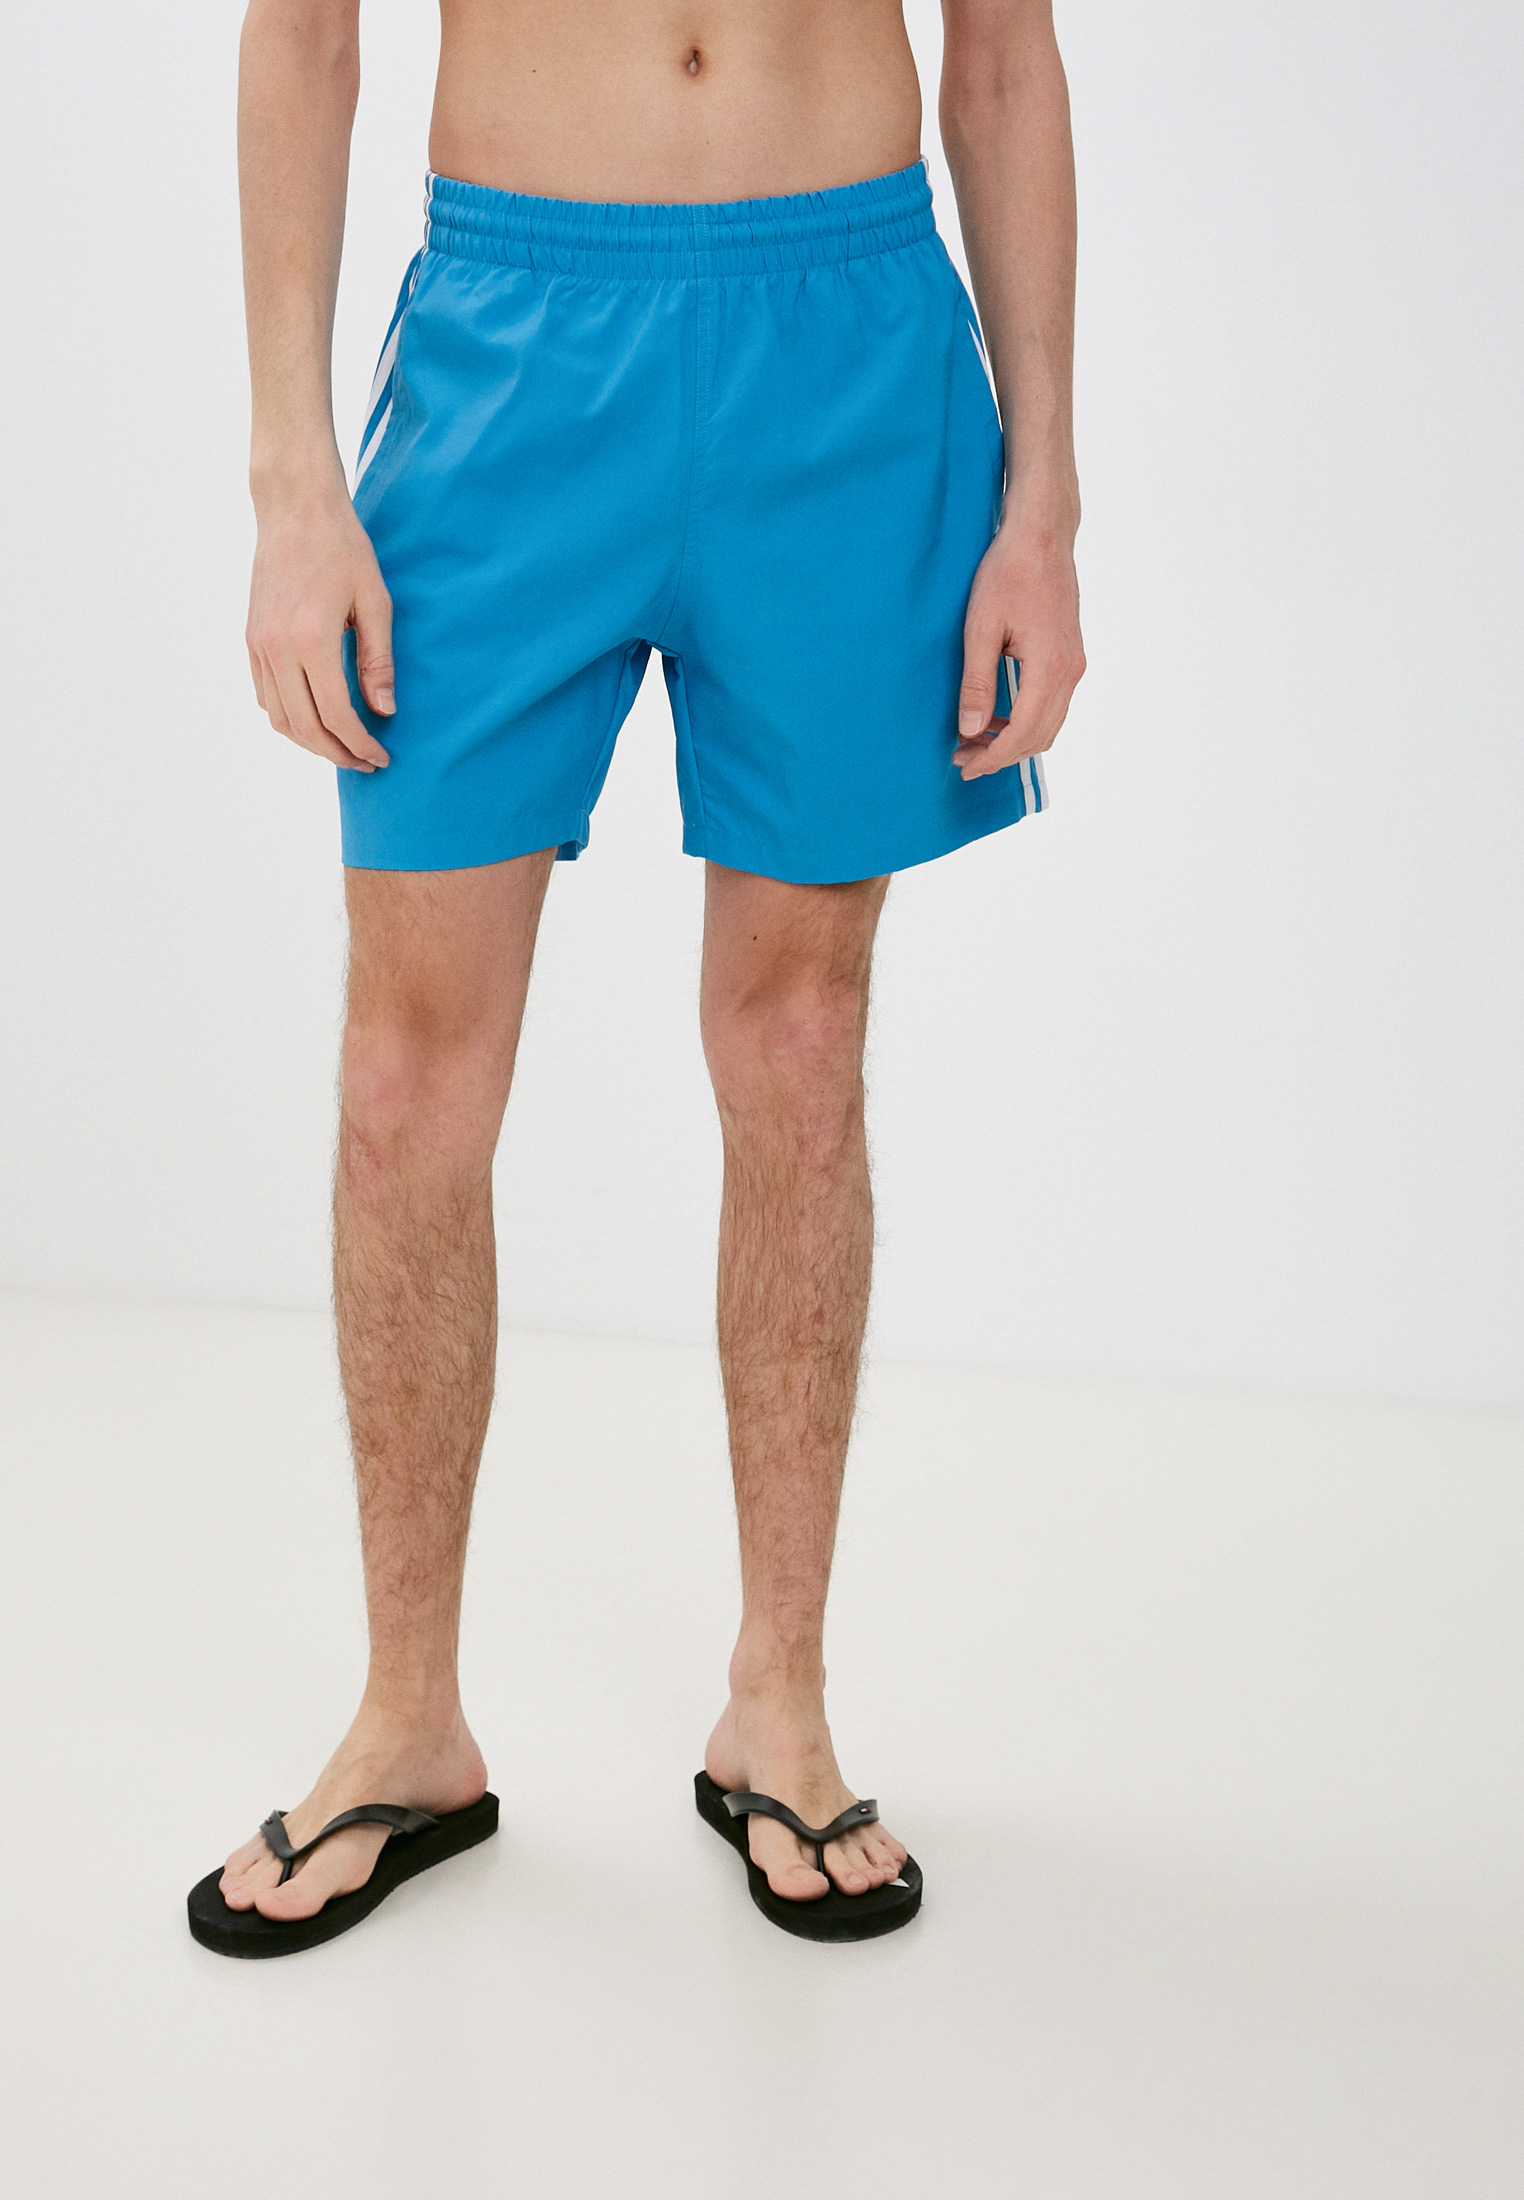 Мужские шорты для плавания Adidas Originals (Адидас Ориджиналс) HB9533